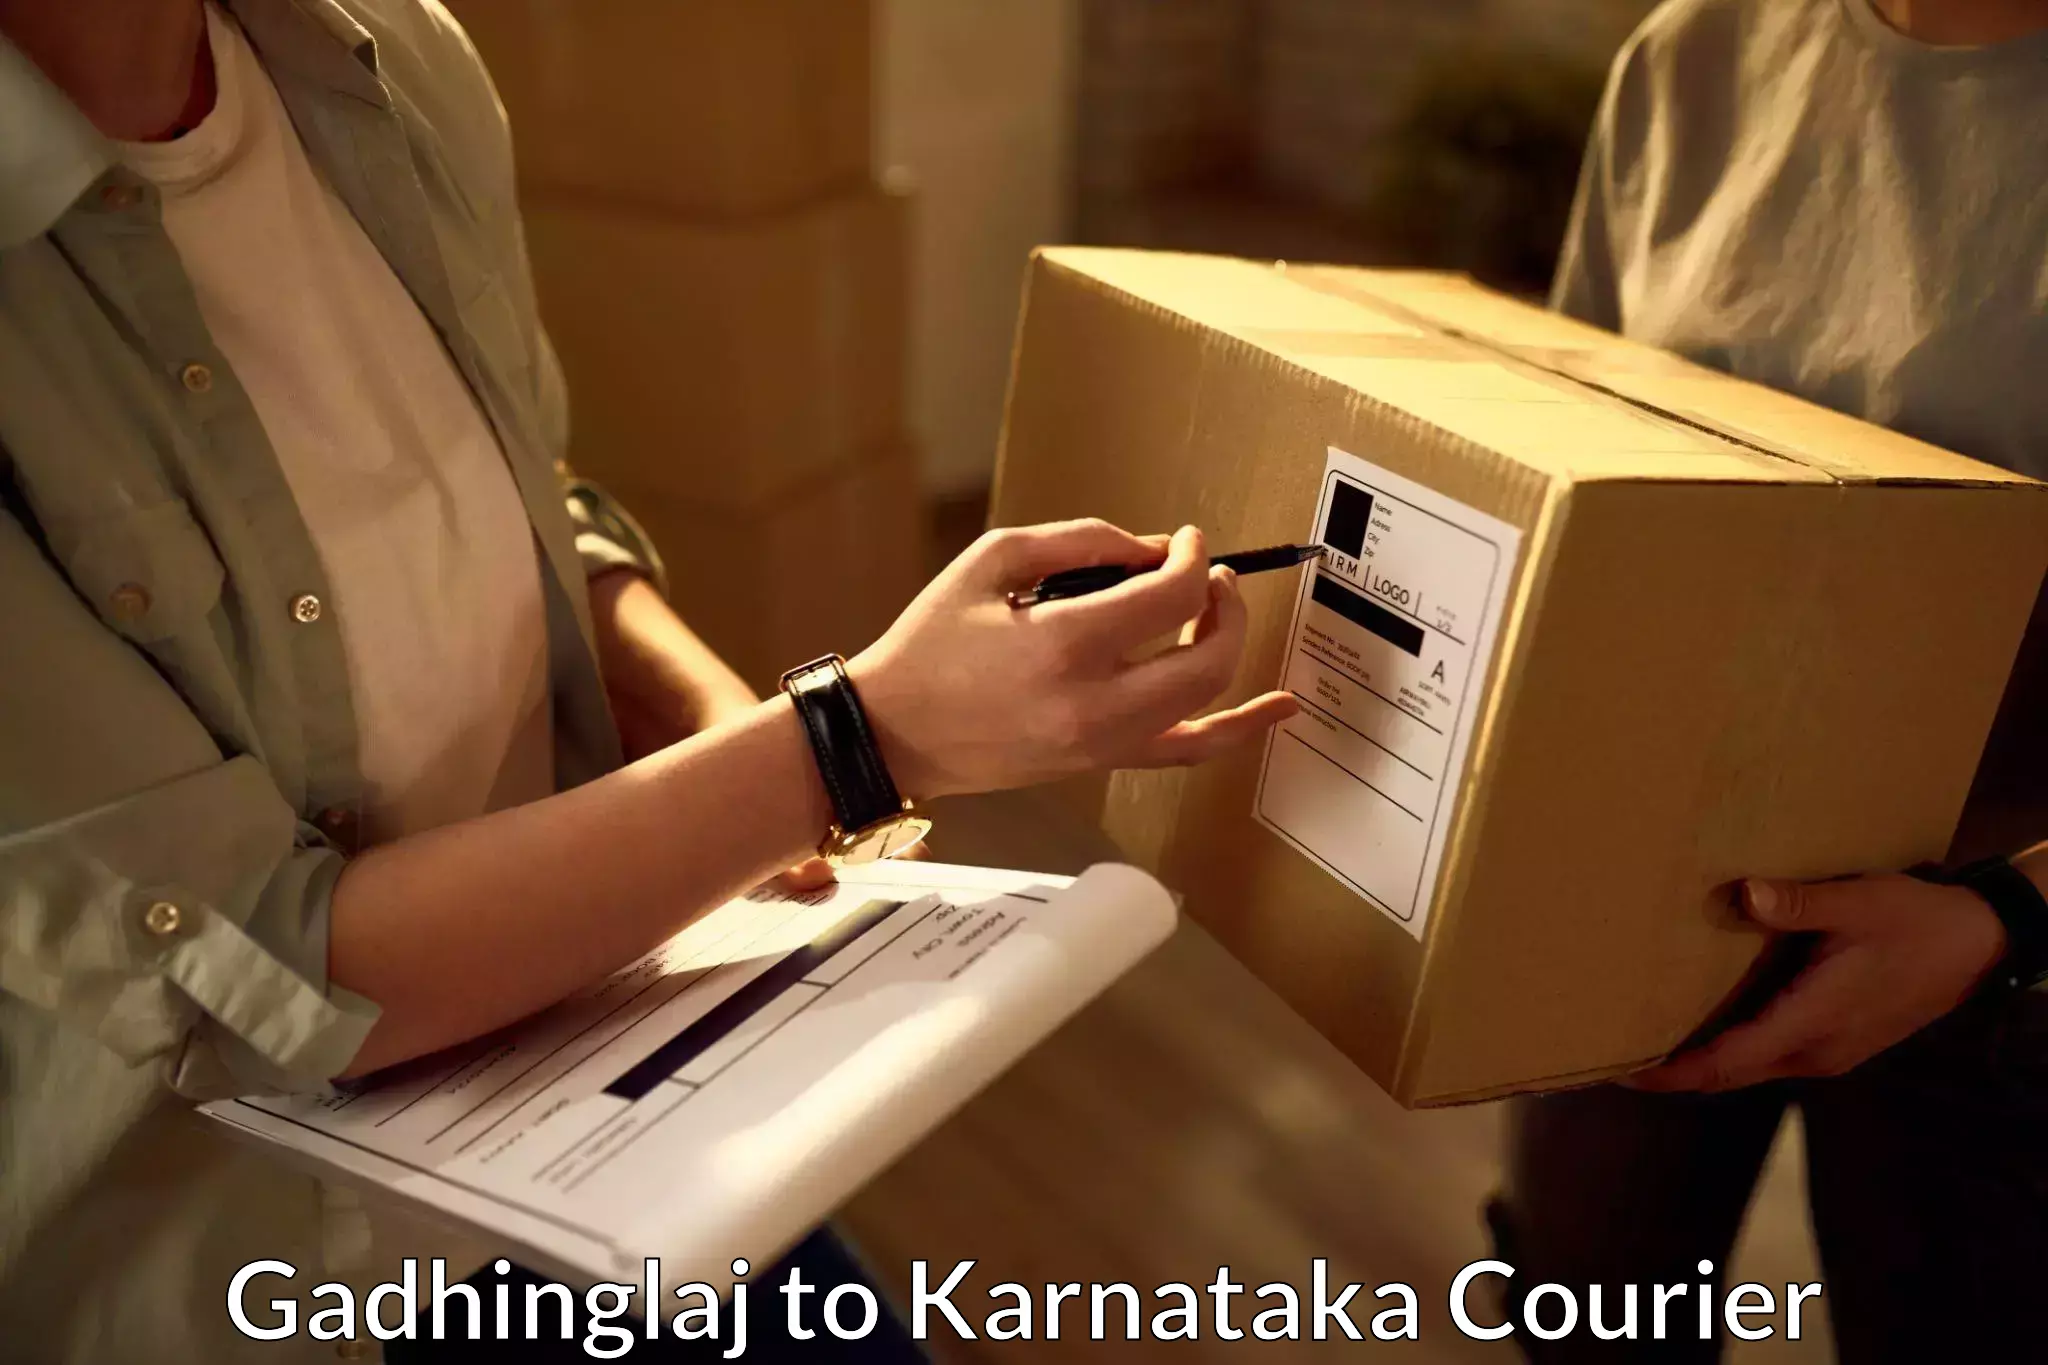 Advanced delivery network Gadhinglaj to Karnataka